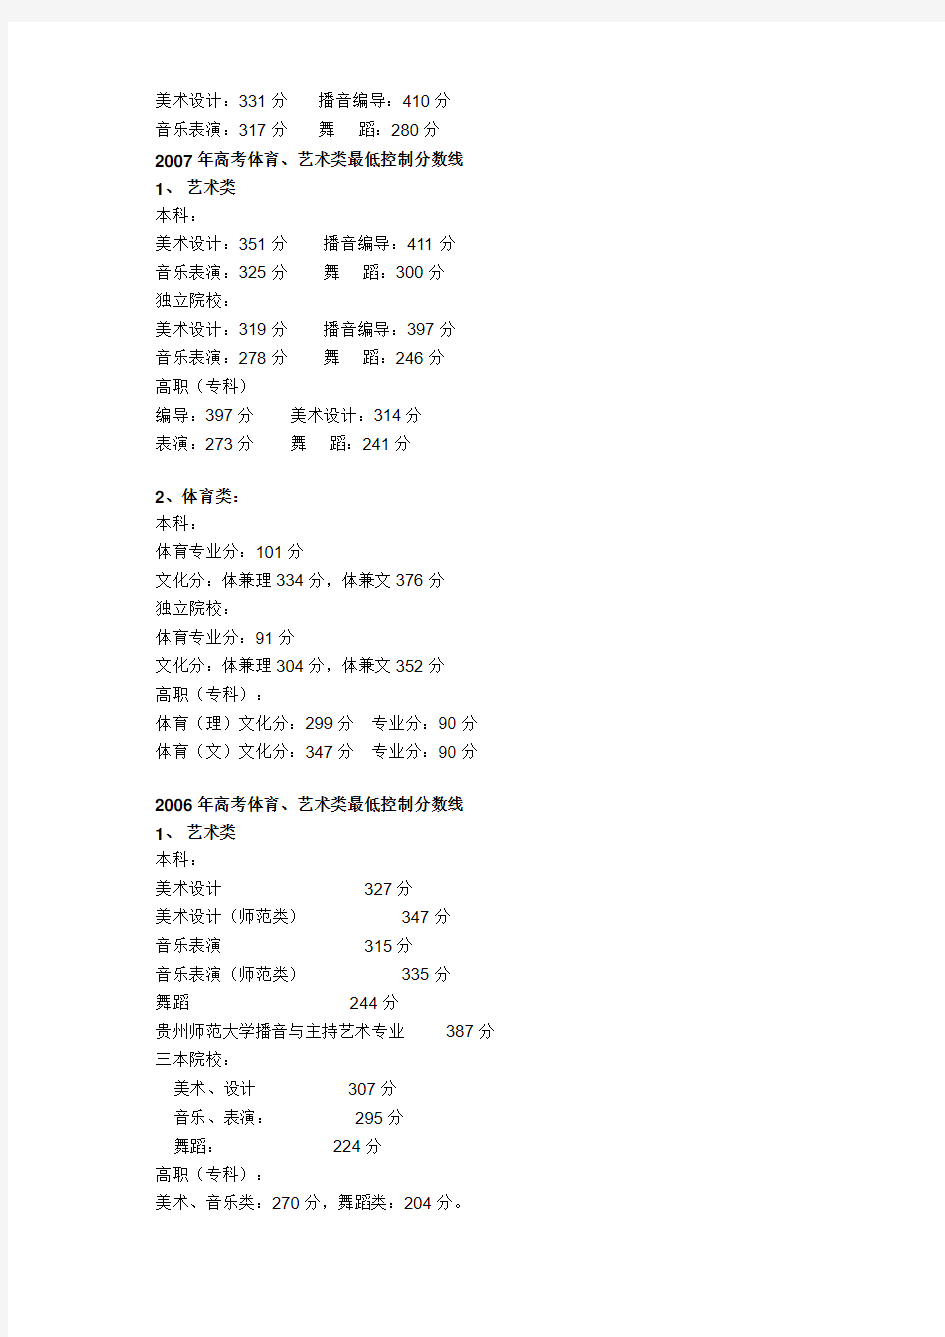 贵州省六年高考录取分数线对照表